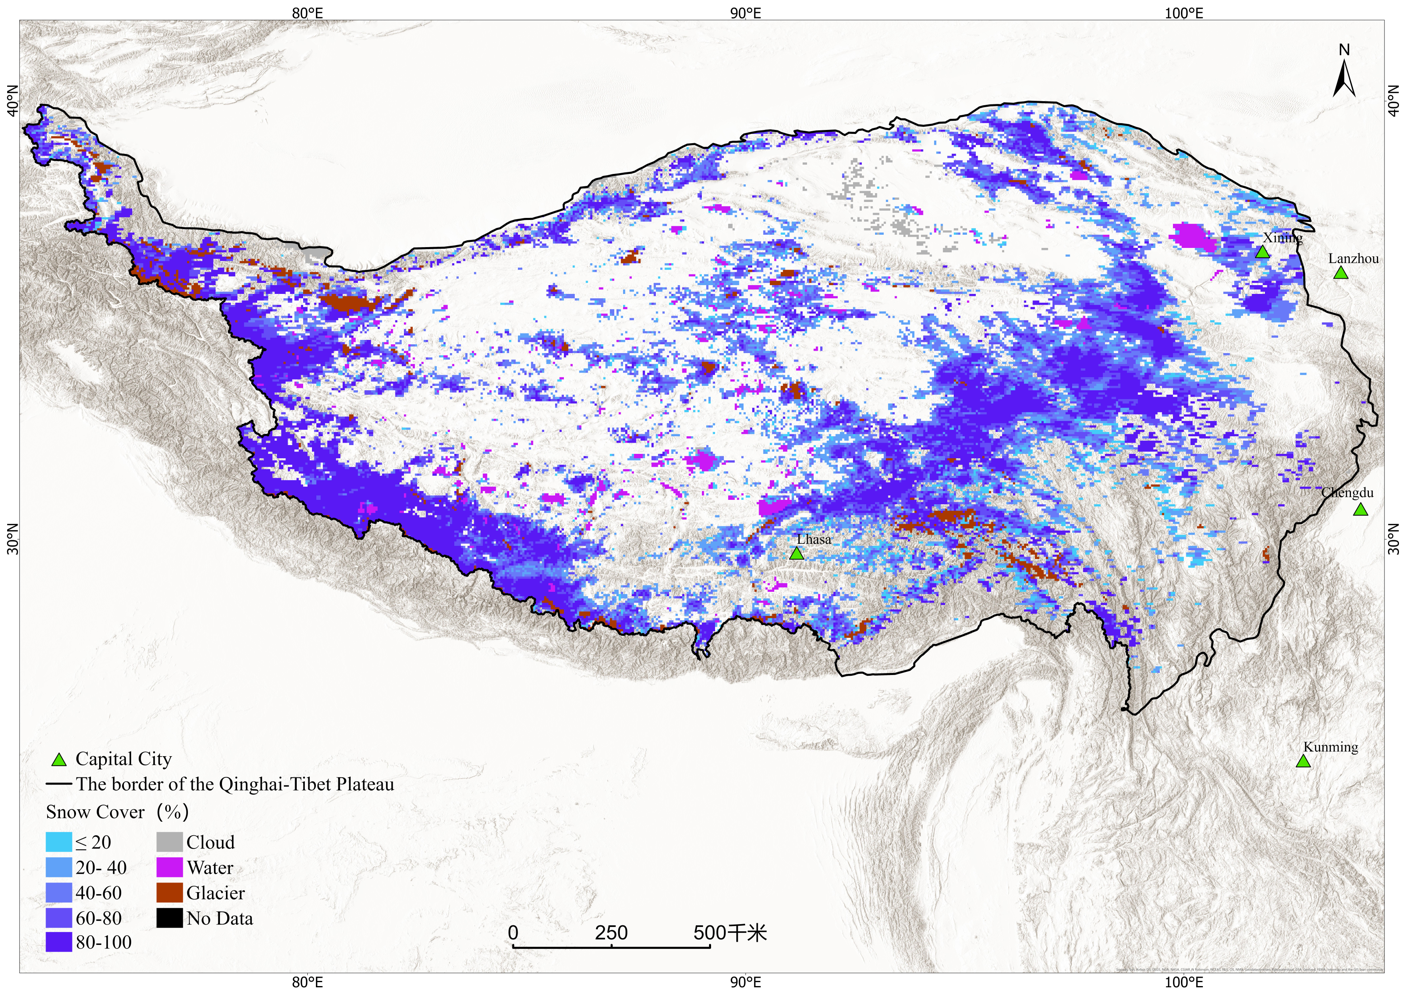 喜马拉雅兴都库什地区积雪范围时间序列评估数据（1982-2018）